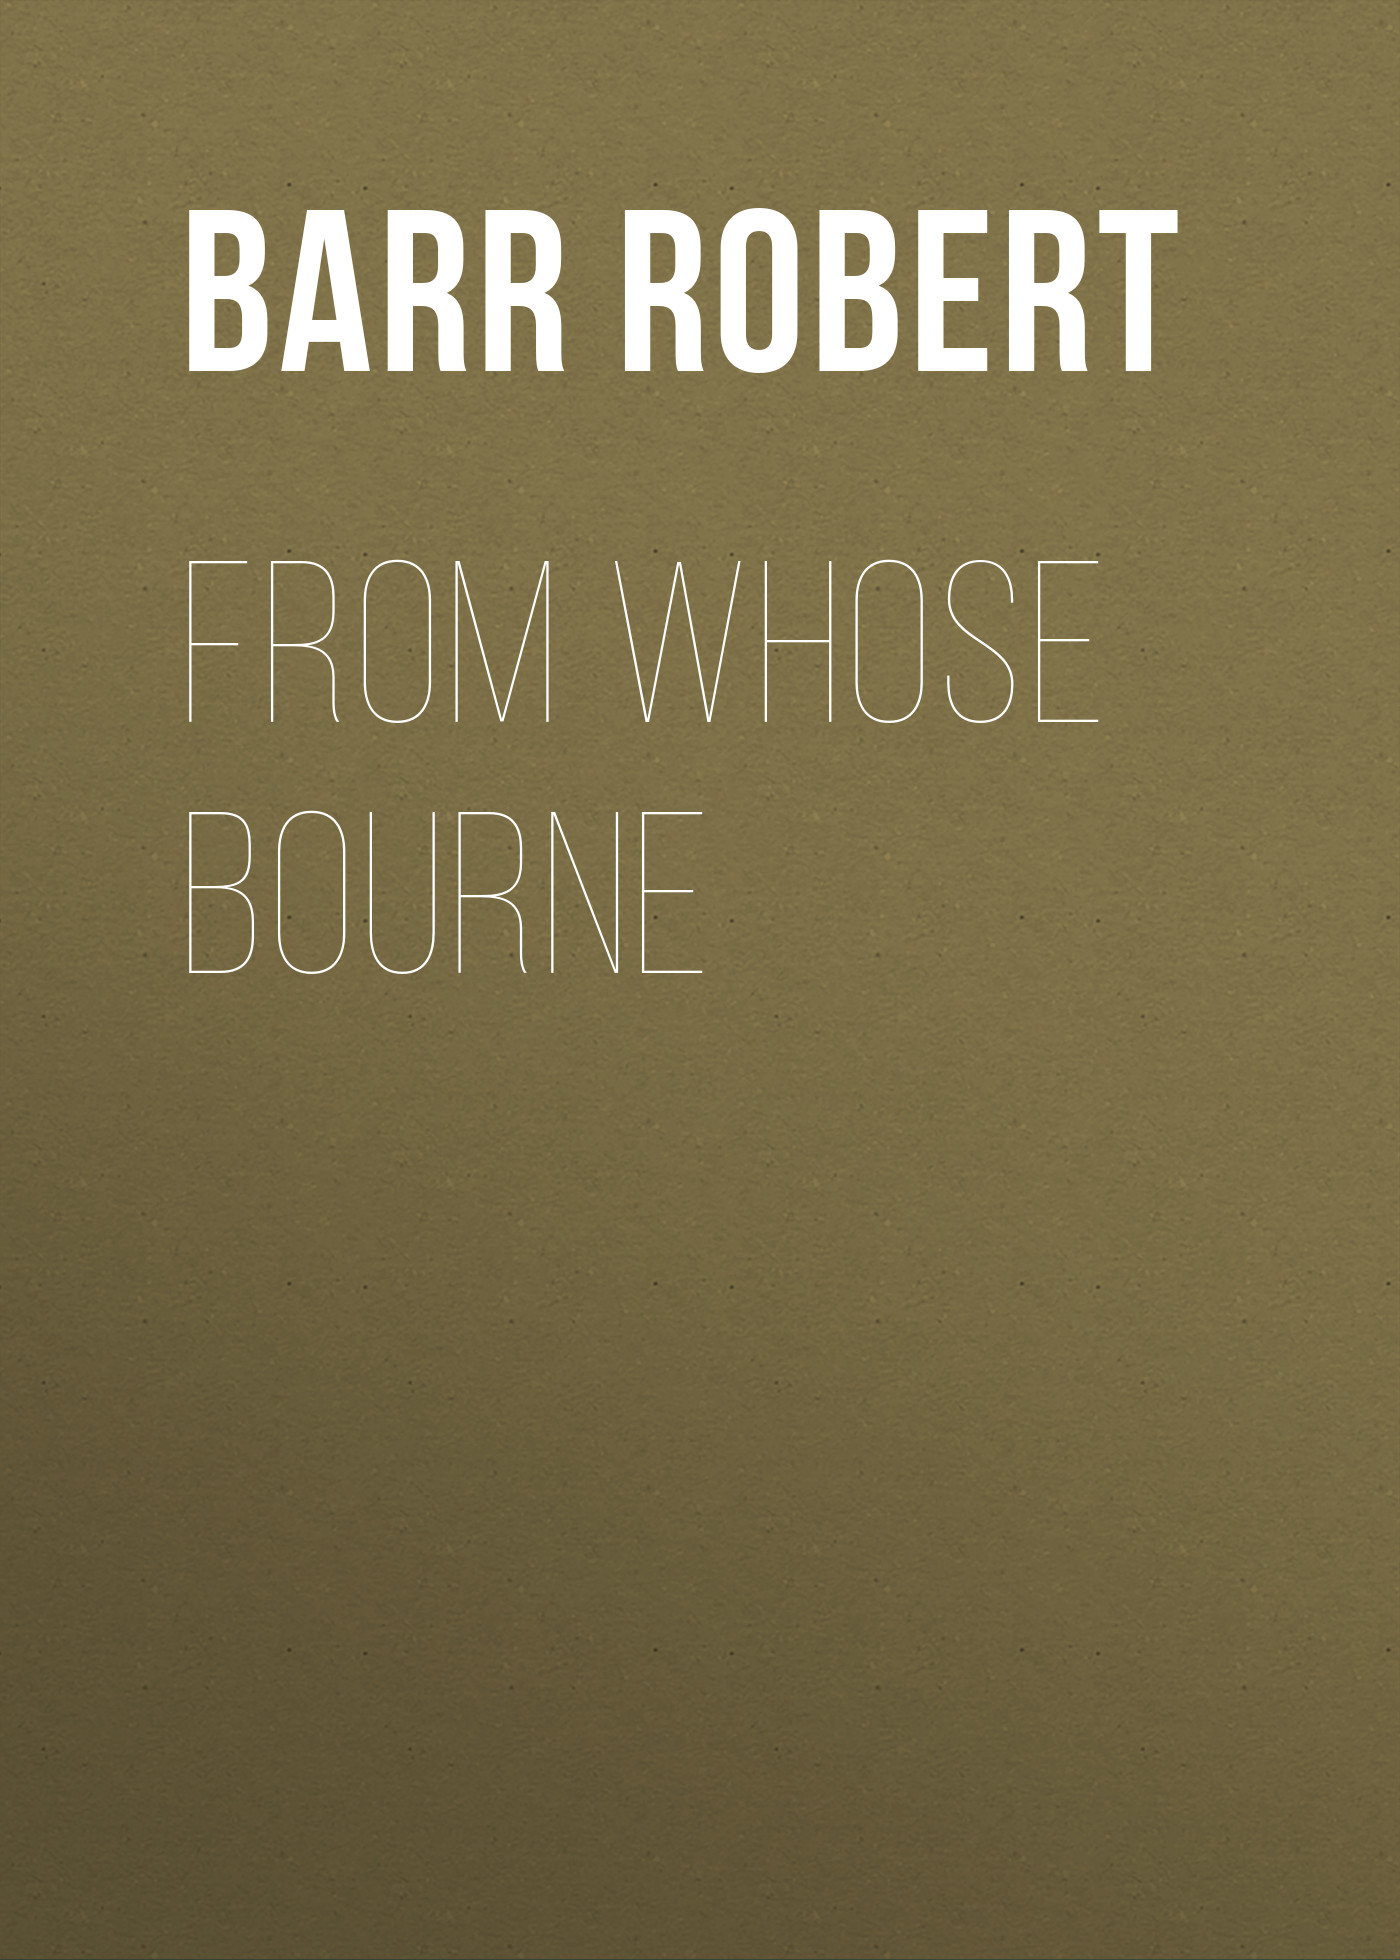 Книга From Whose Bourne из серии , созданная Robert Barr, может относится к жанру Зарубежная классика, Зарубежная старинная литература. Стоимость электронной книги From Whose Bourne с идентификатором 36367134 составляет 0 руб.